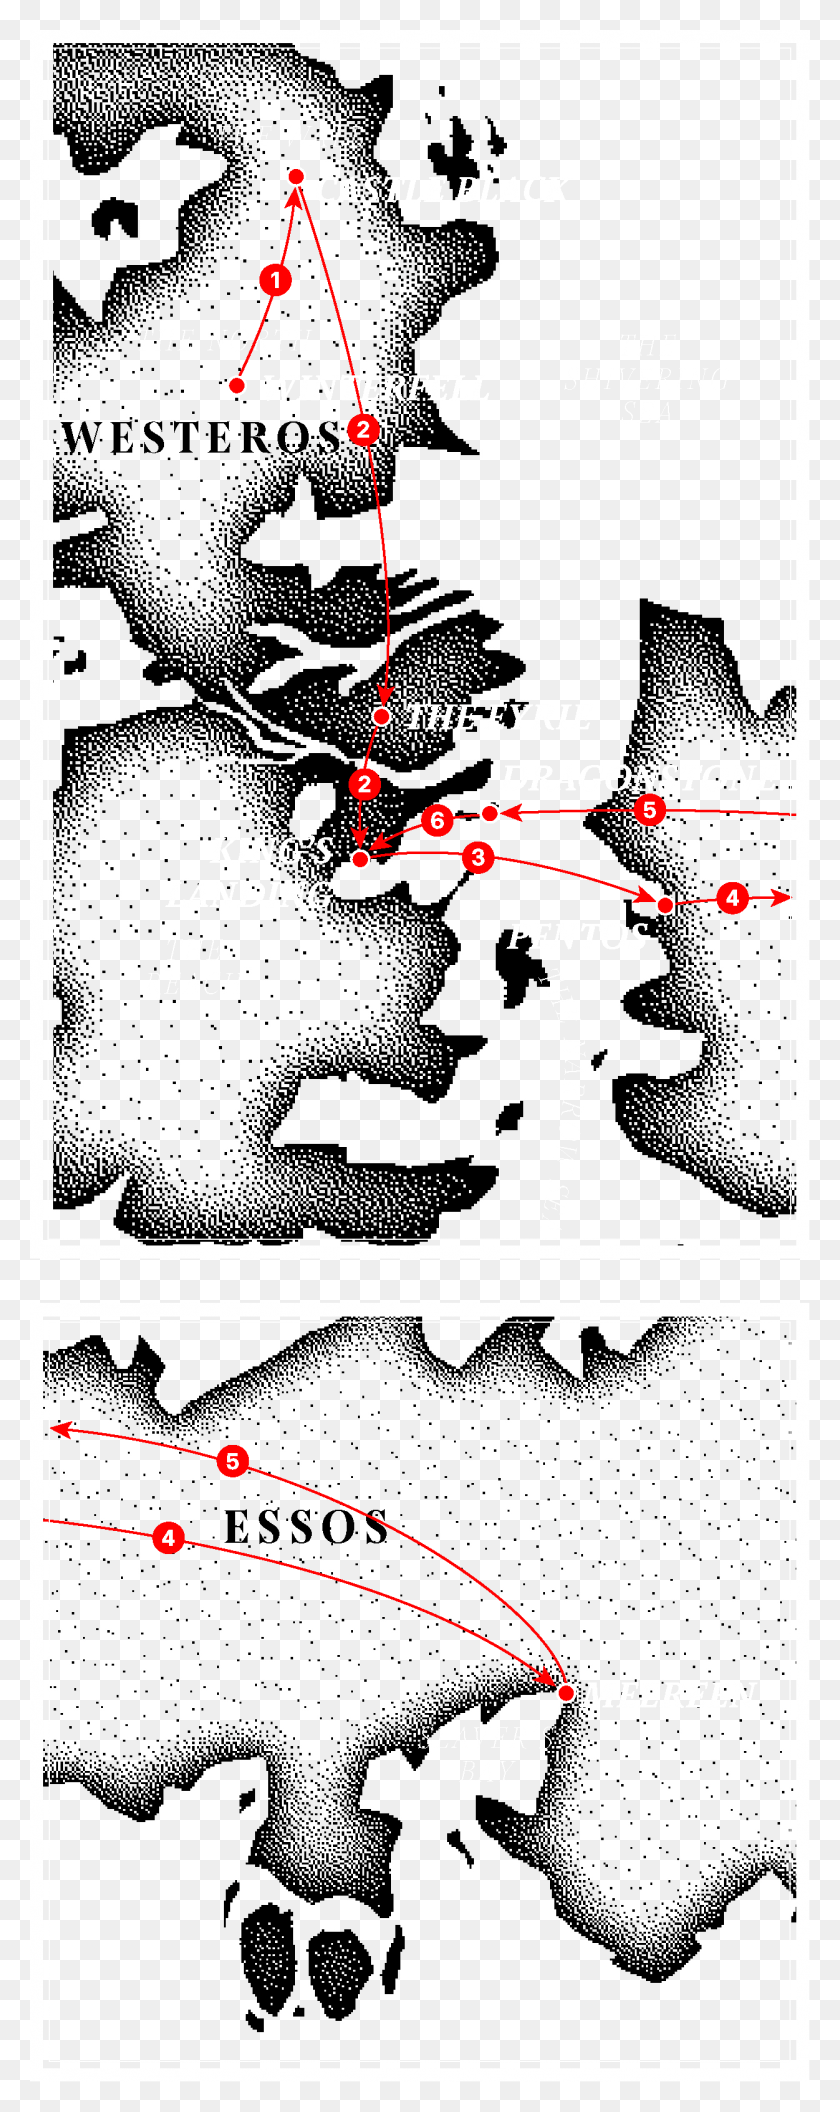 1251x3292 Descargar Png De La Oveja Negra Lannister A Mano De La Reina Ilustración, Diagrama, Mapa, Diagrama Hd Png